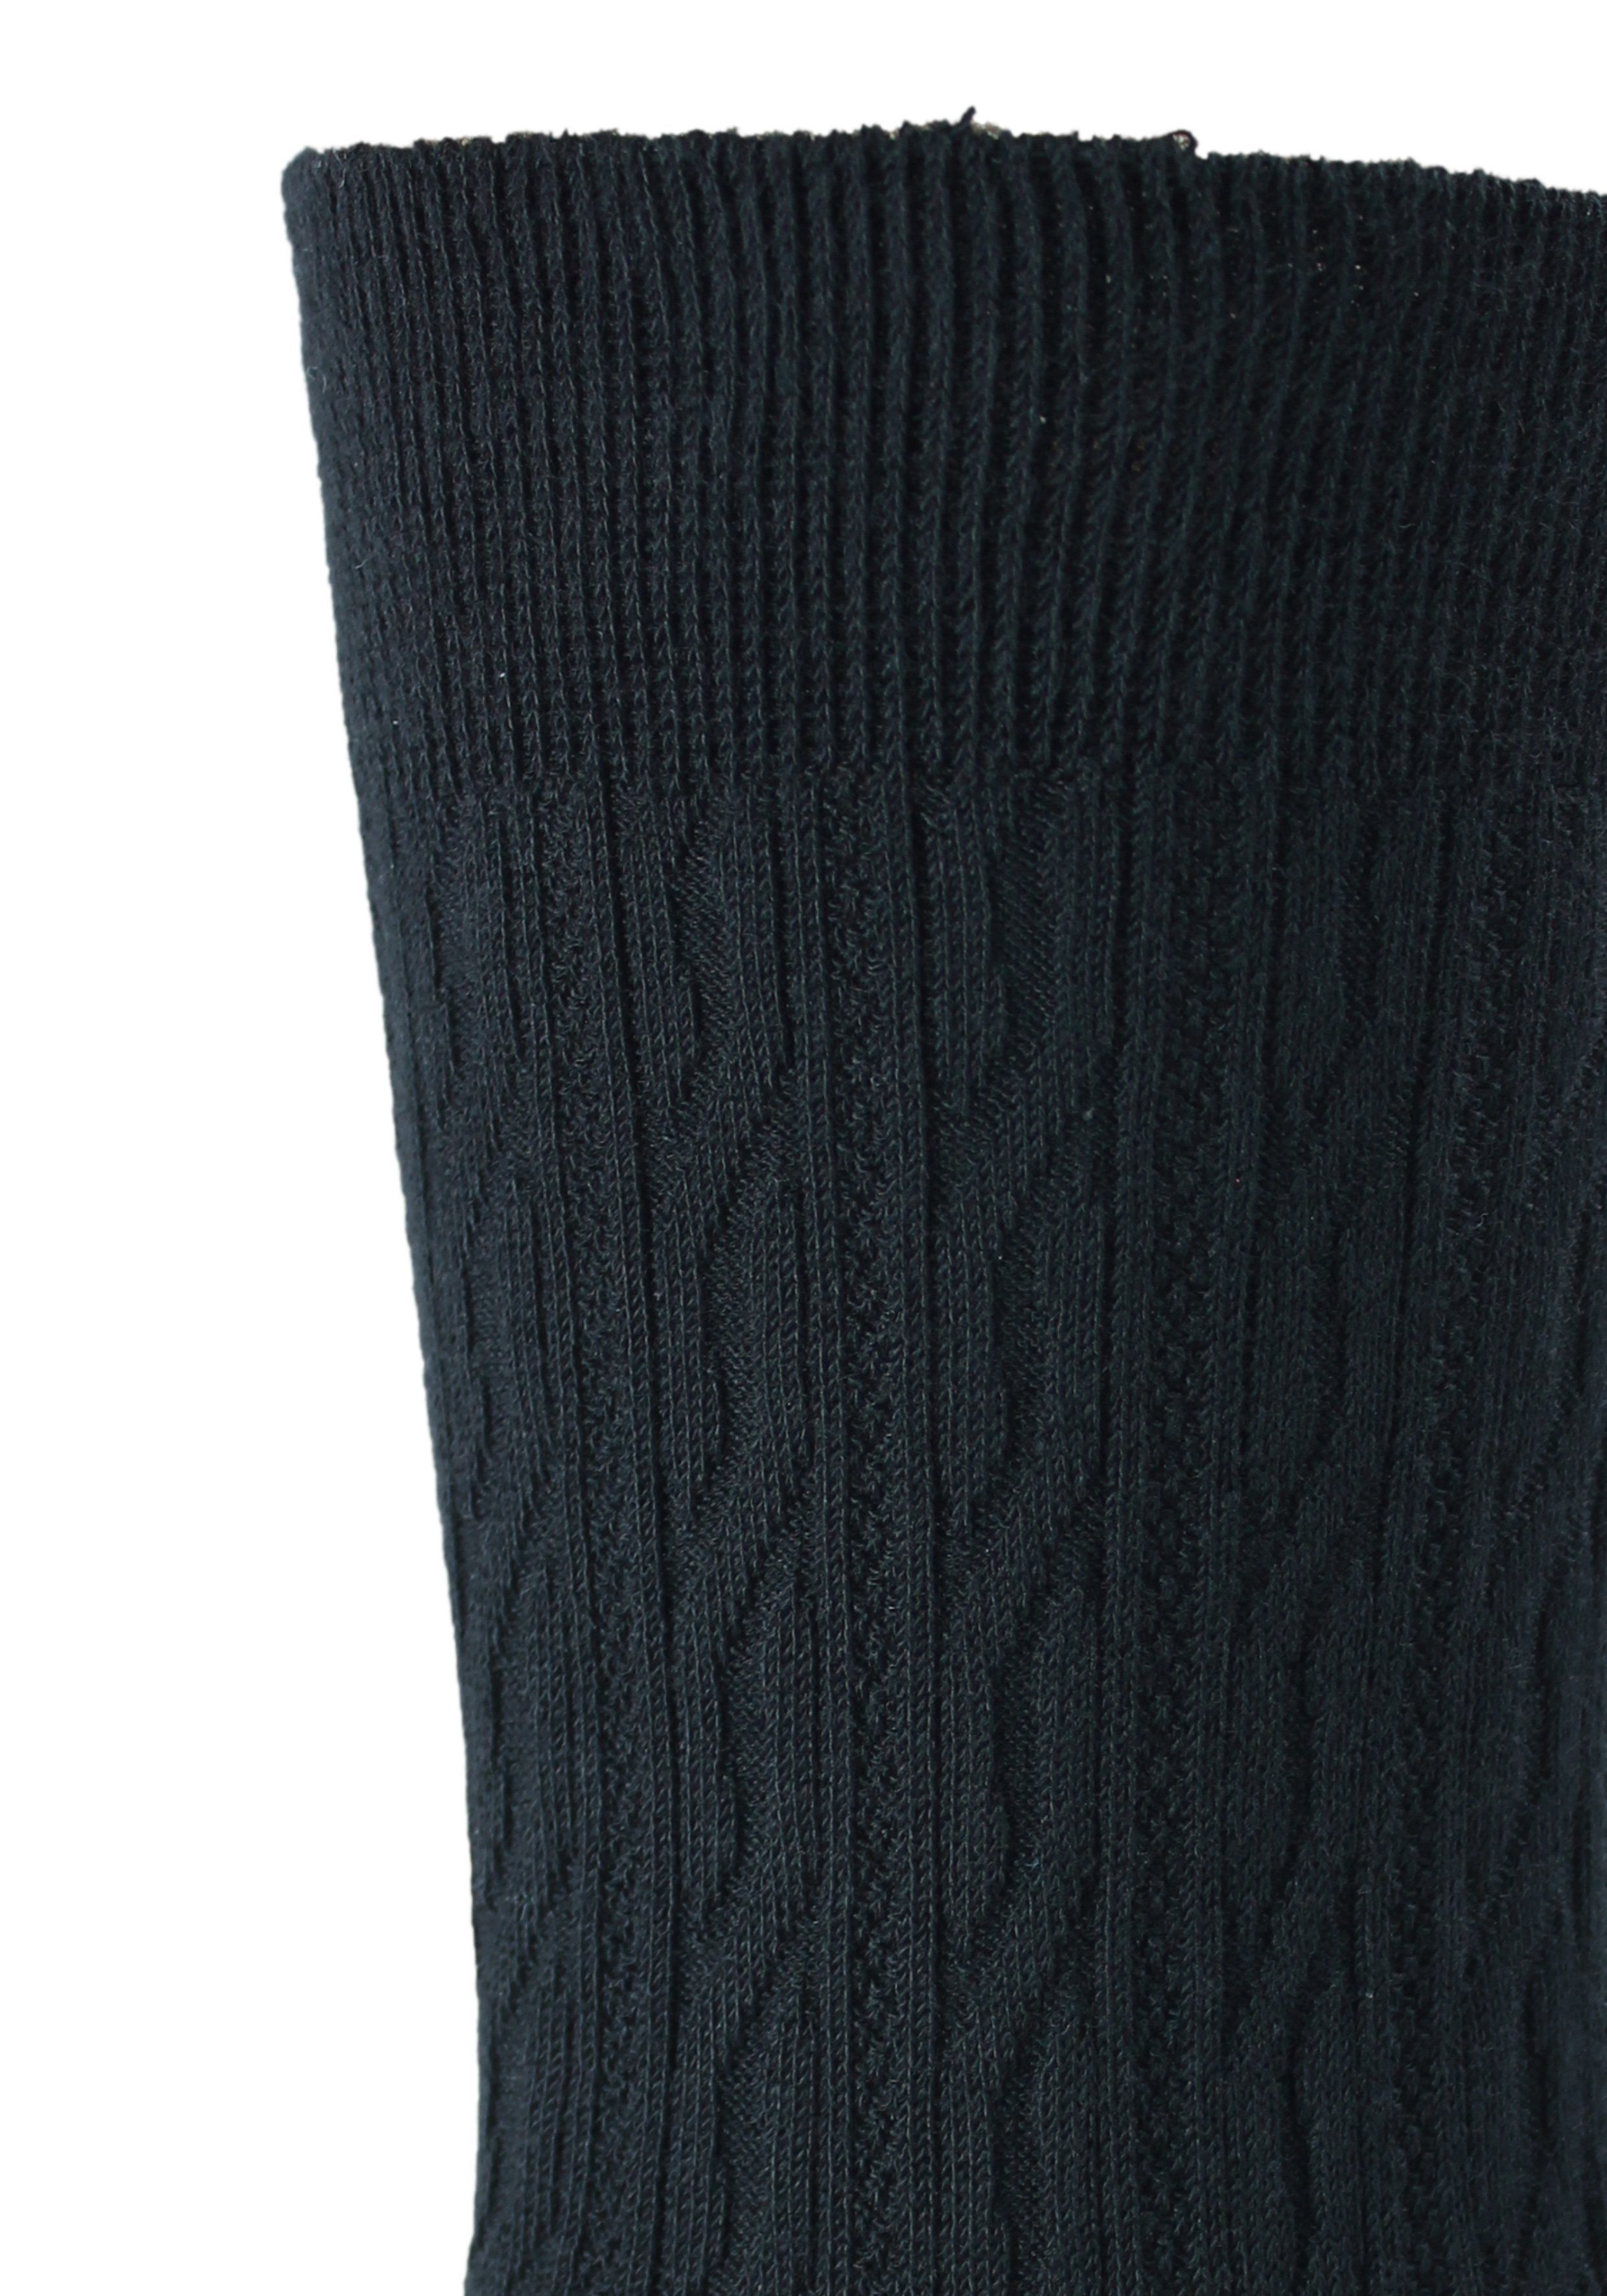 (5-Paar) praktischen 5er-Pack Socken Rogo im Zopfstruktur schwarz